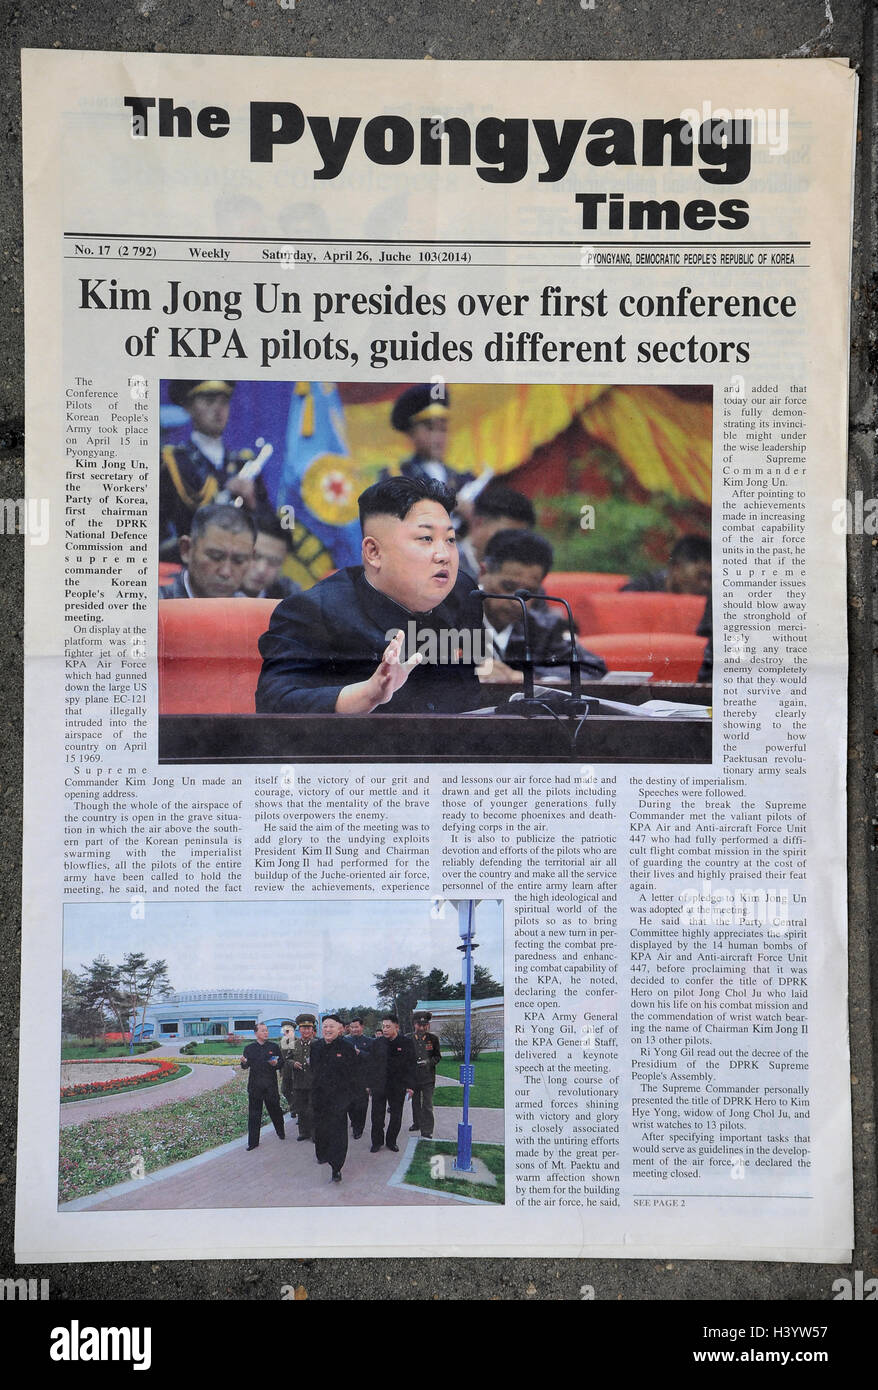 Le journal The Times de Pyongyang, en Corée du Nord Banque D'Images